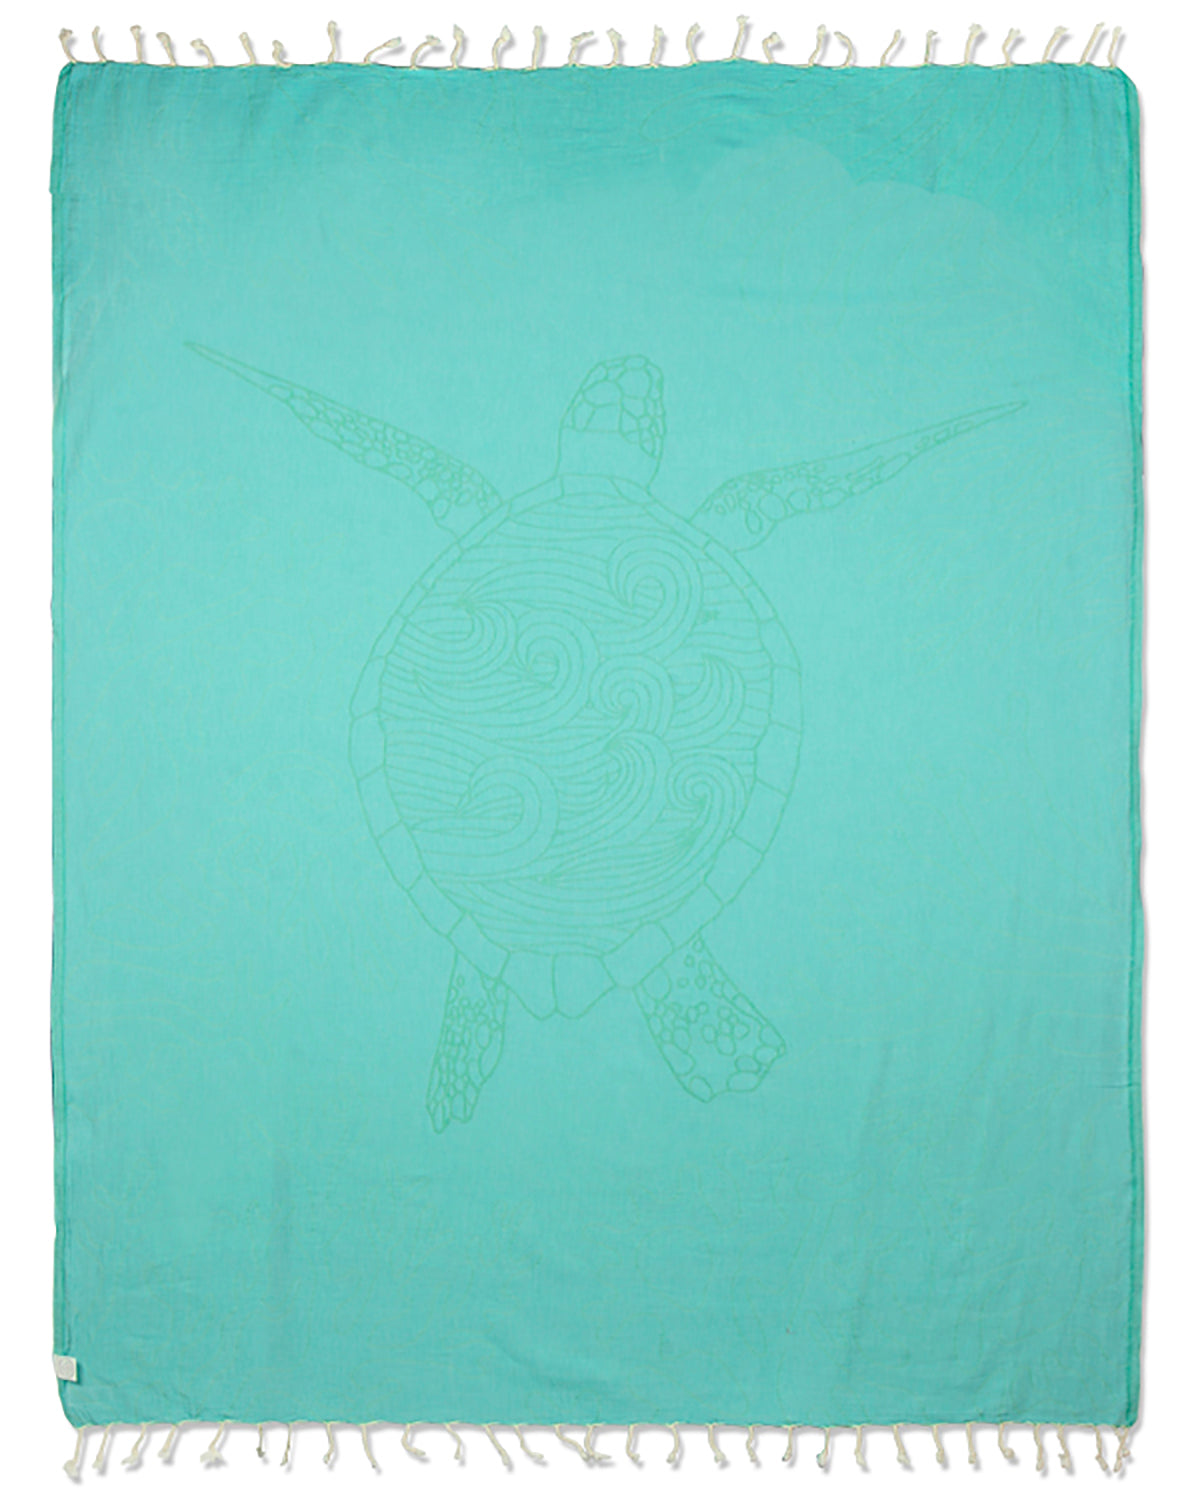 Turquoise Sea Turtle Reef Large Towel